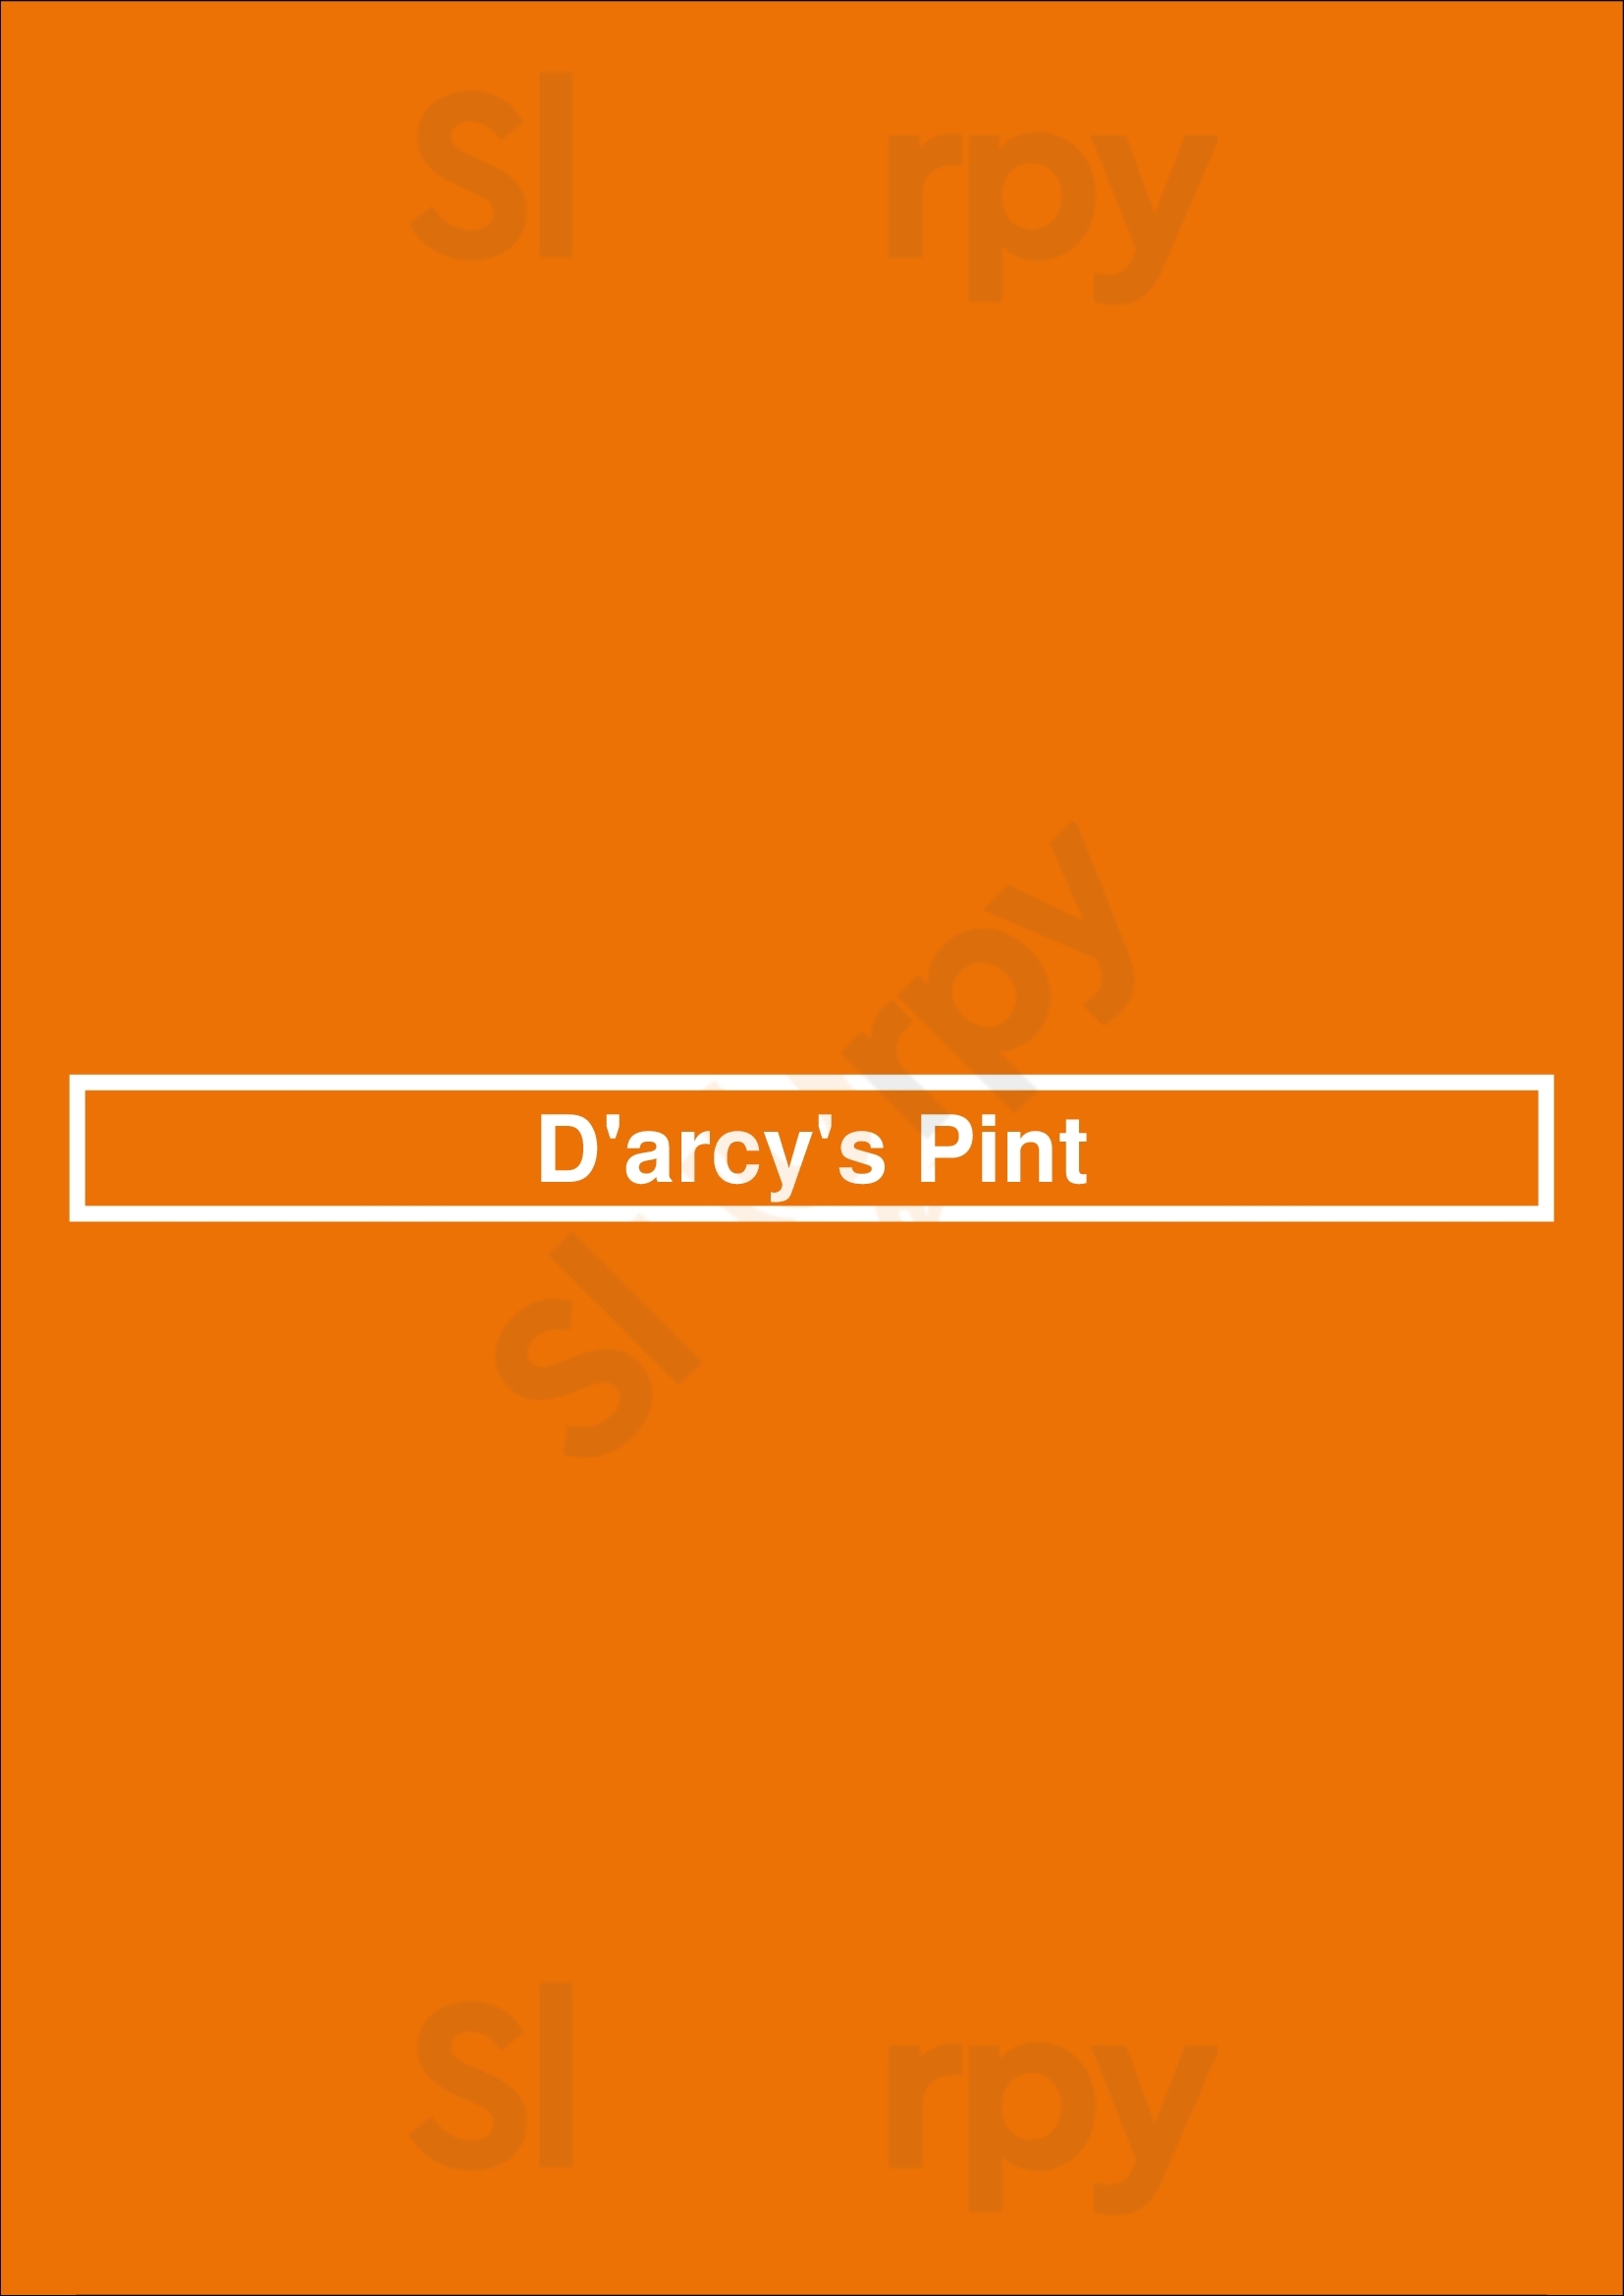 D'arcy's Pint Springfield Menu - 1